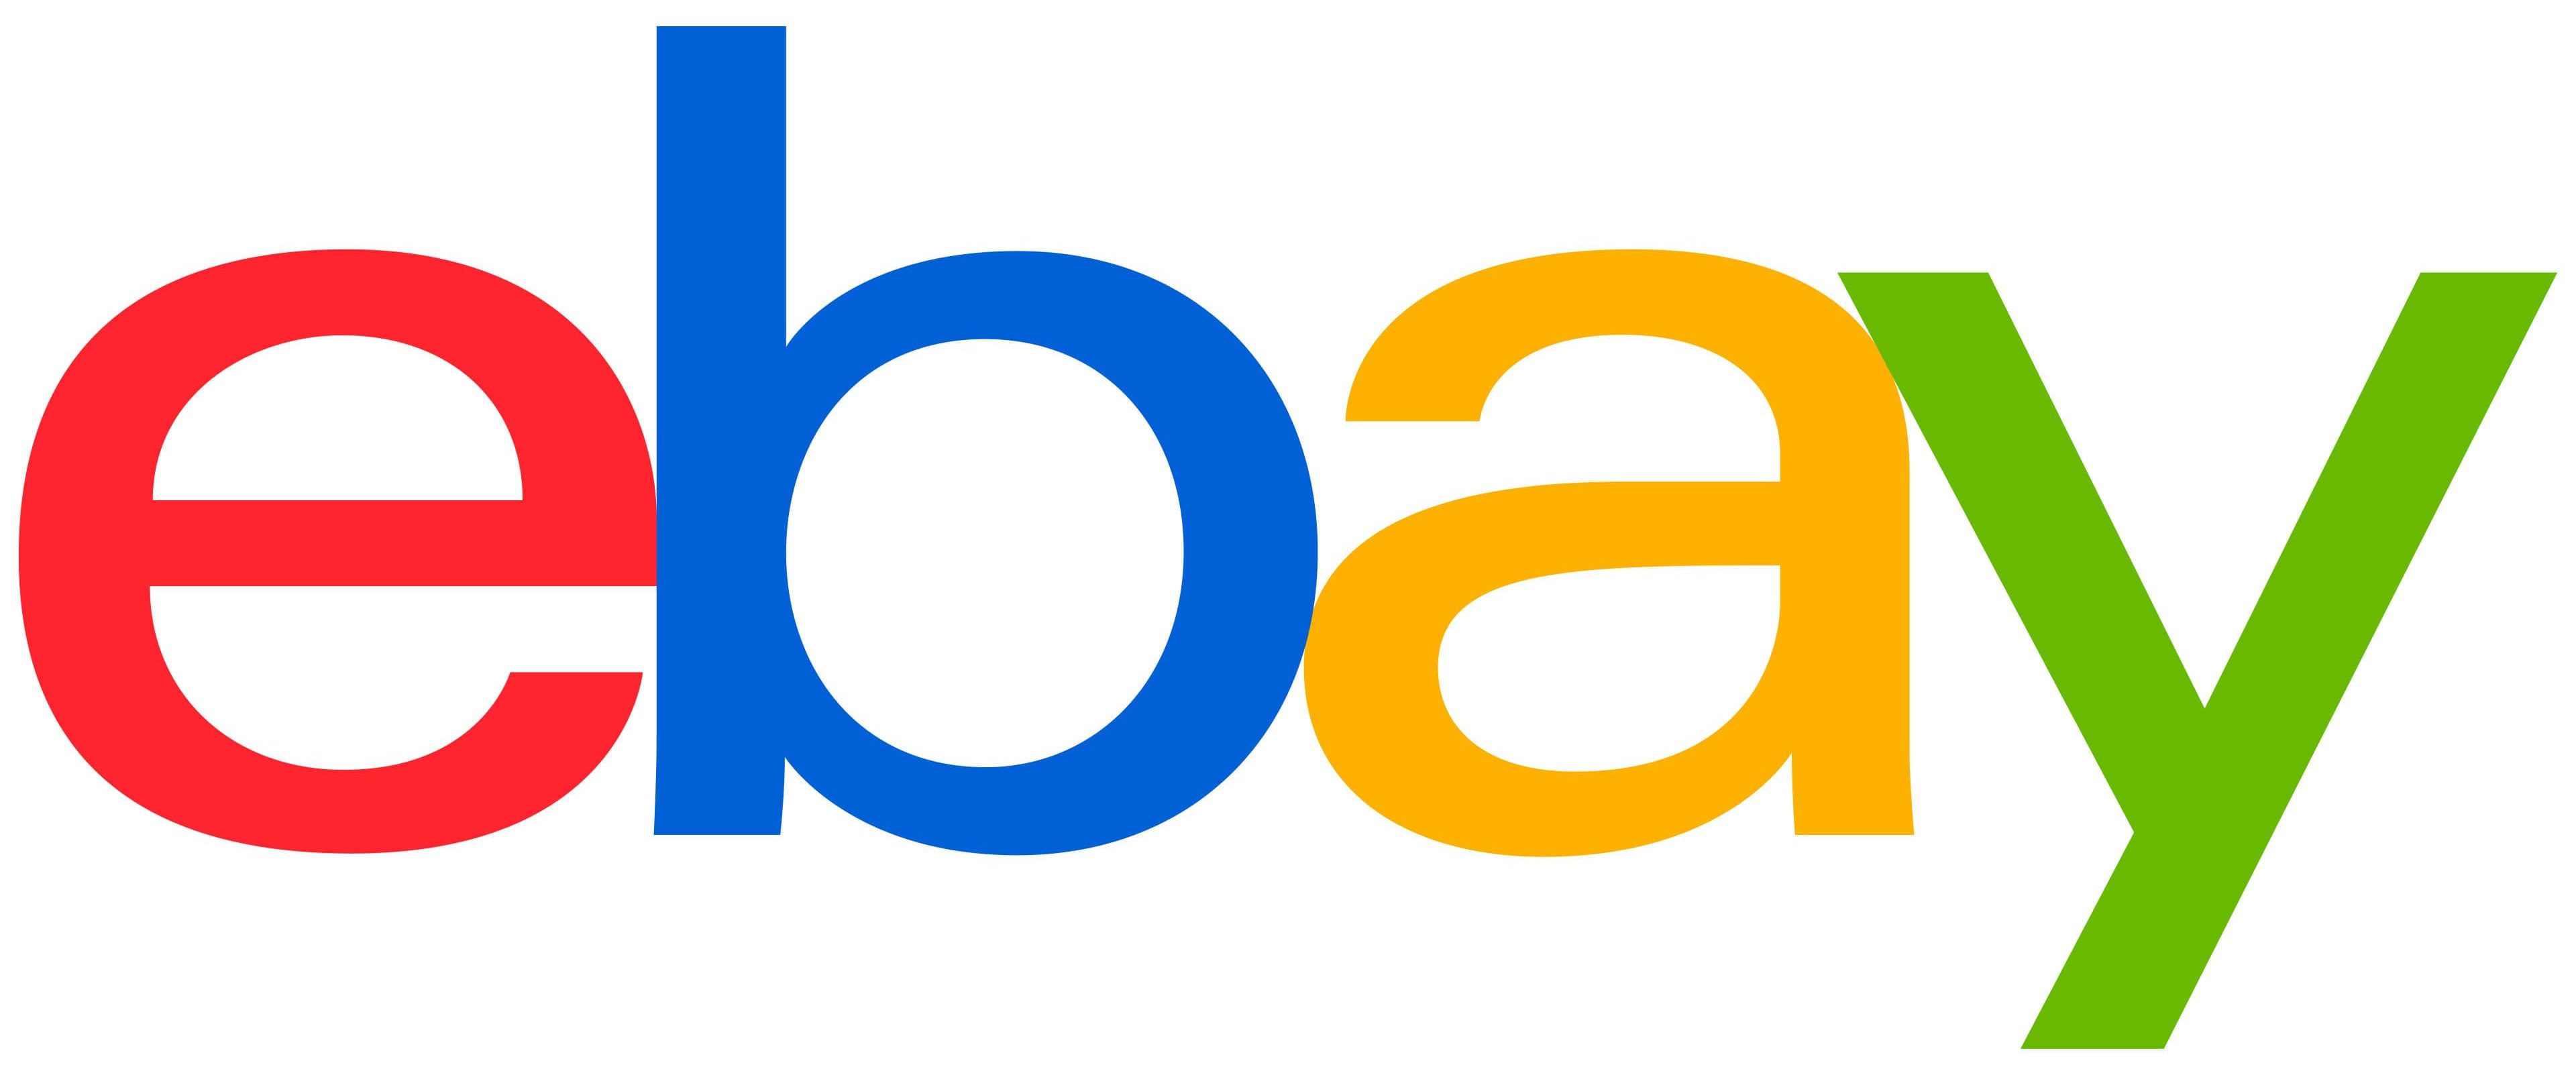 eBay-Logo-2012-present